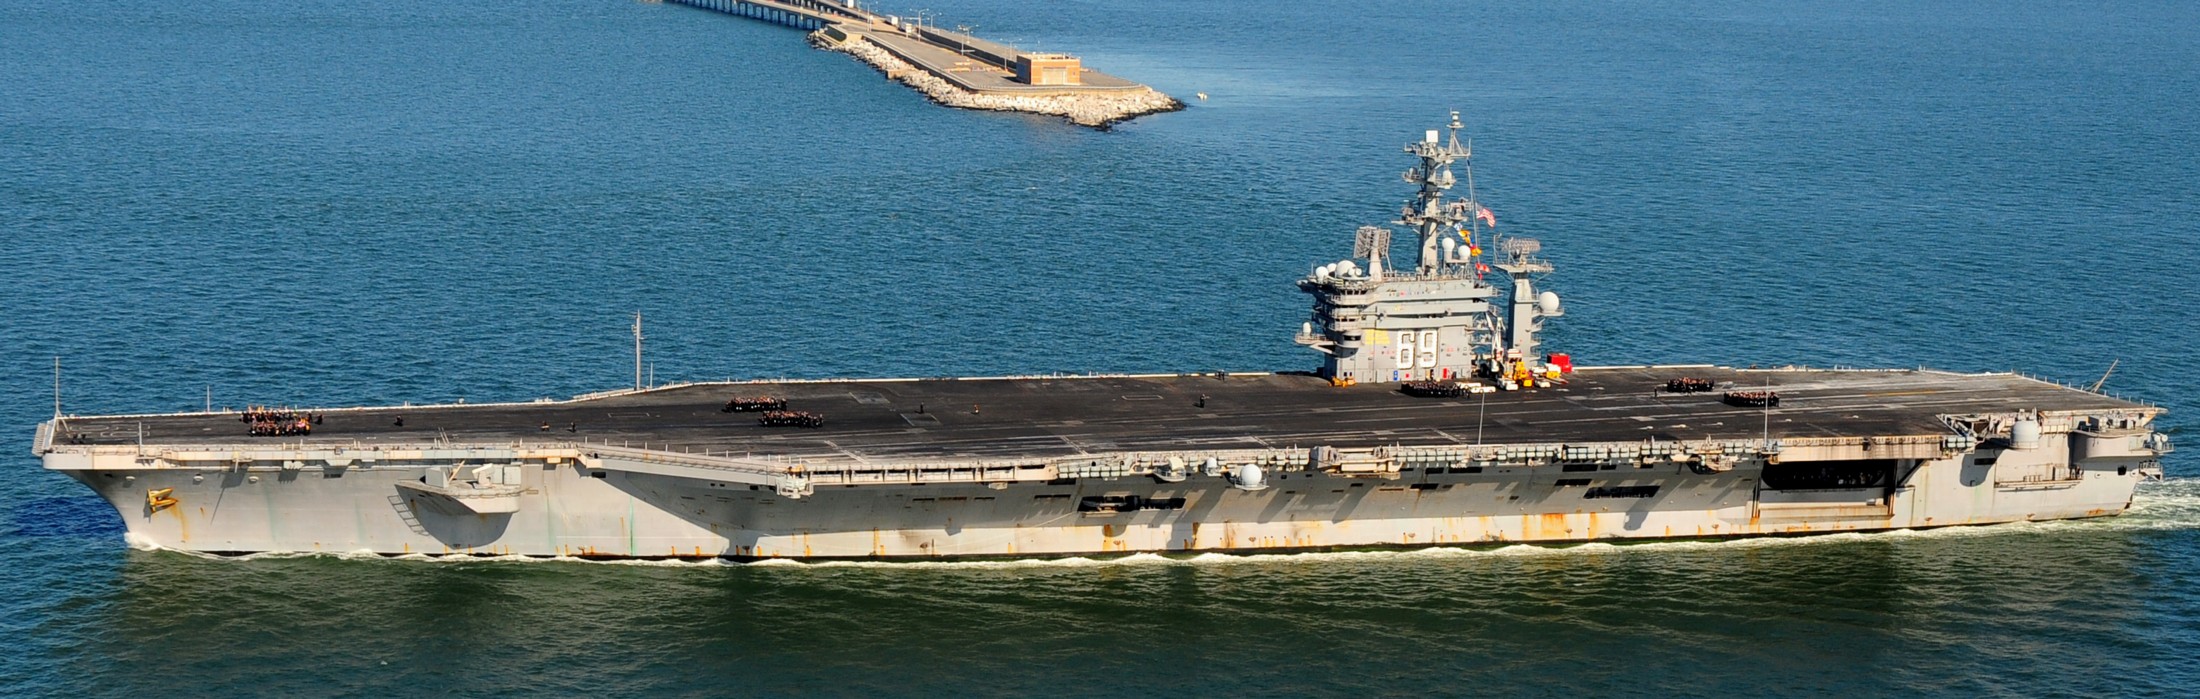 uss dwight d. eisenhower cvn-69 aircraft carrier us navy 2012 97 norfolk virginia